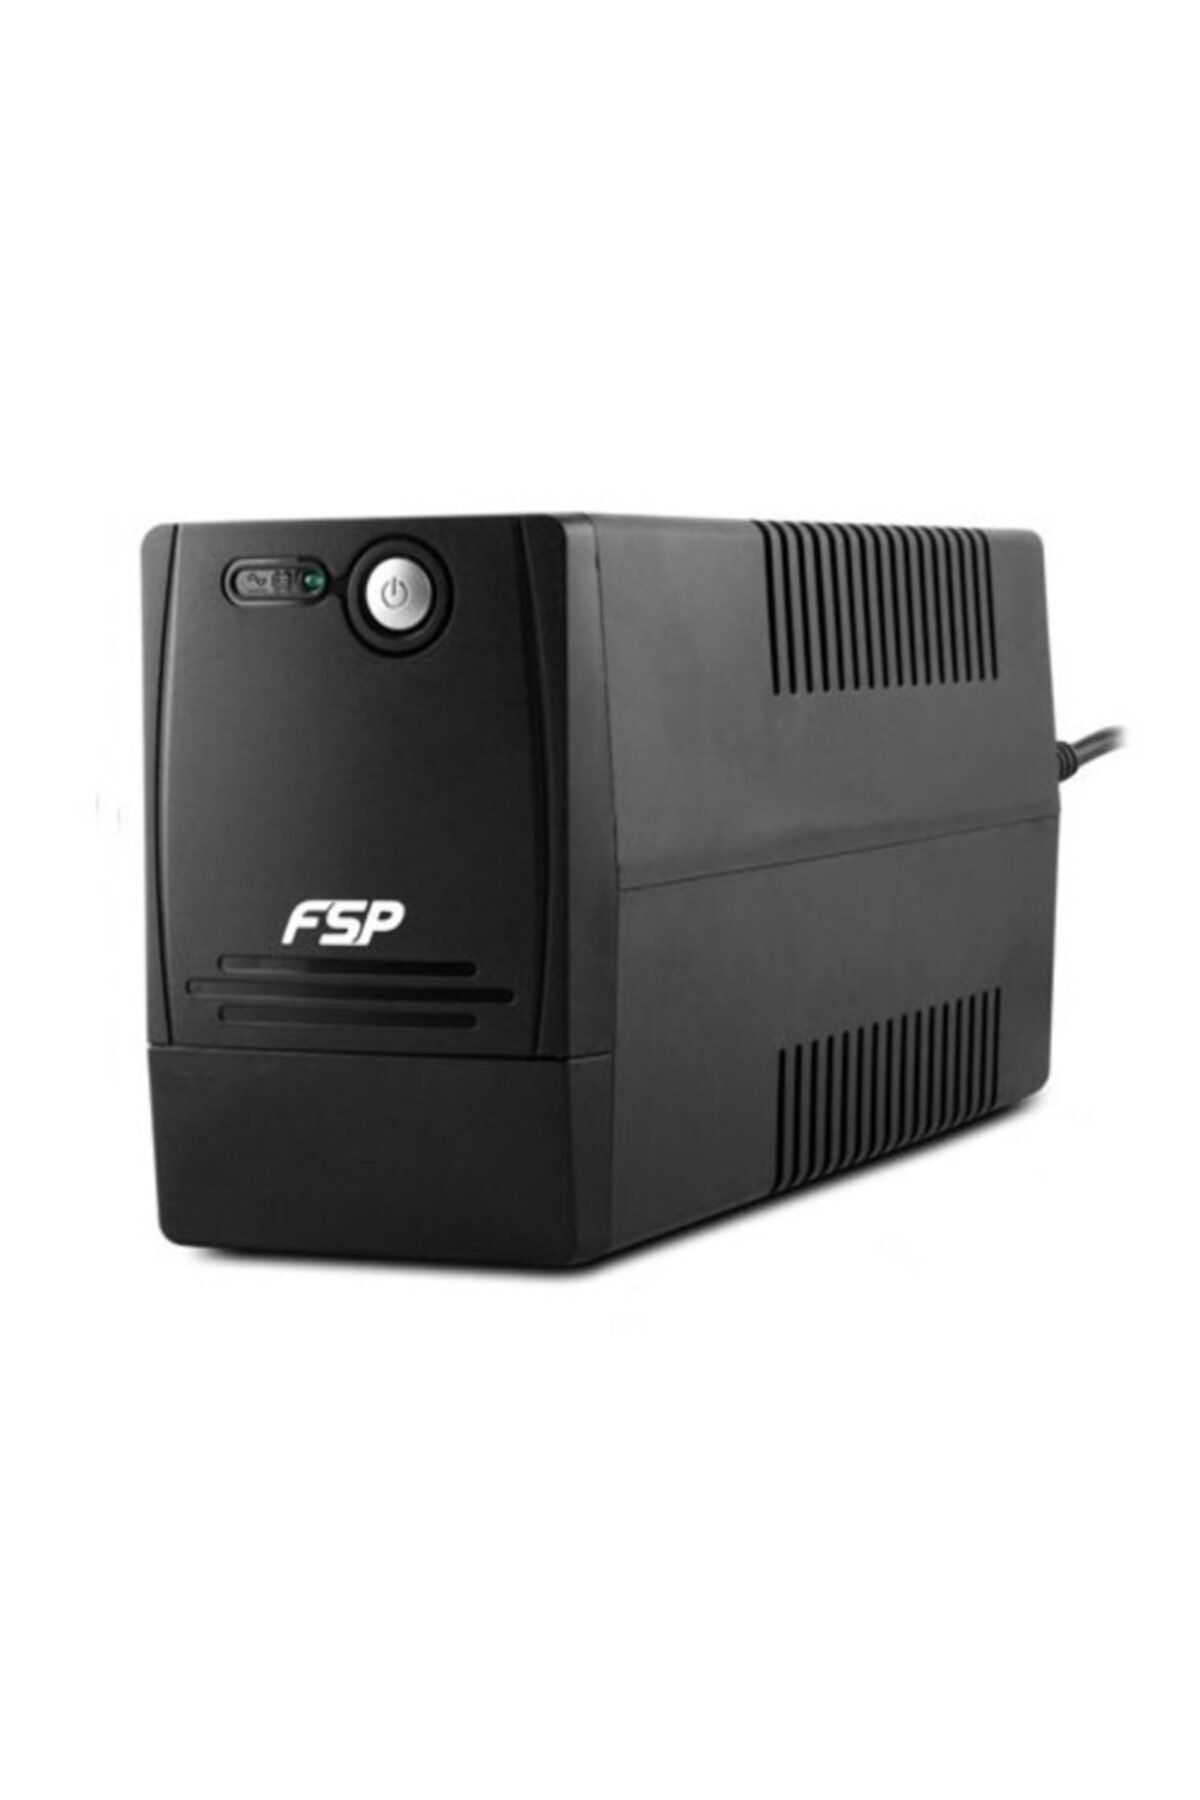 FSP Fp600 600va Line Interactive Ups1x7a Akü